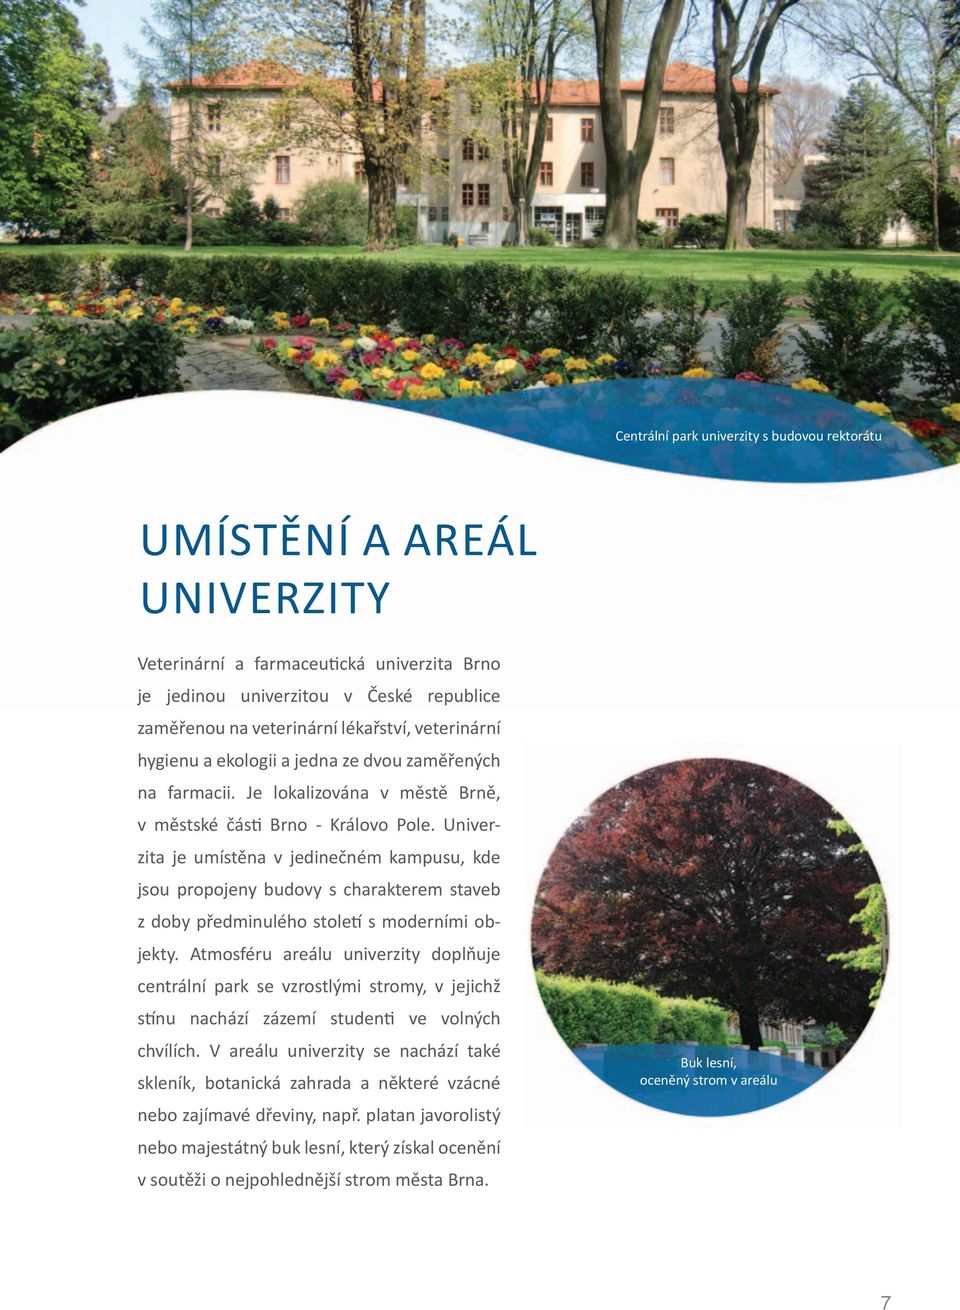 Univerzita je umístěna v jedinečném kampusu, kde jsou propojeny budovy s charakterem staveb z doby předminulého století s moderními objekty.